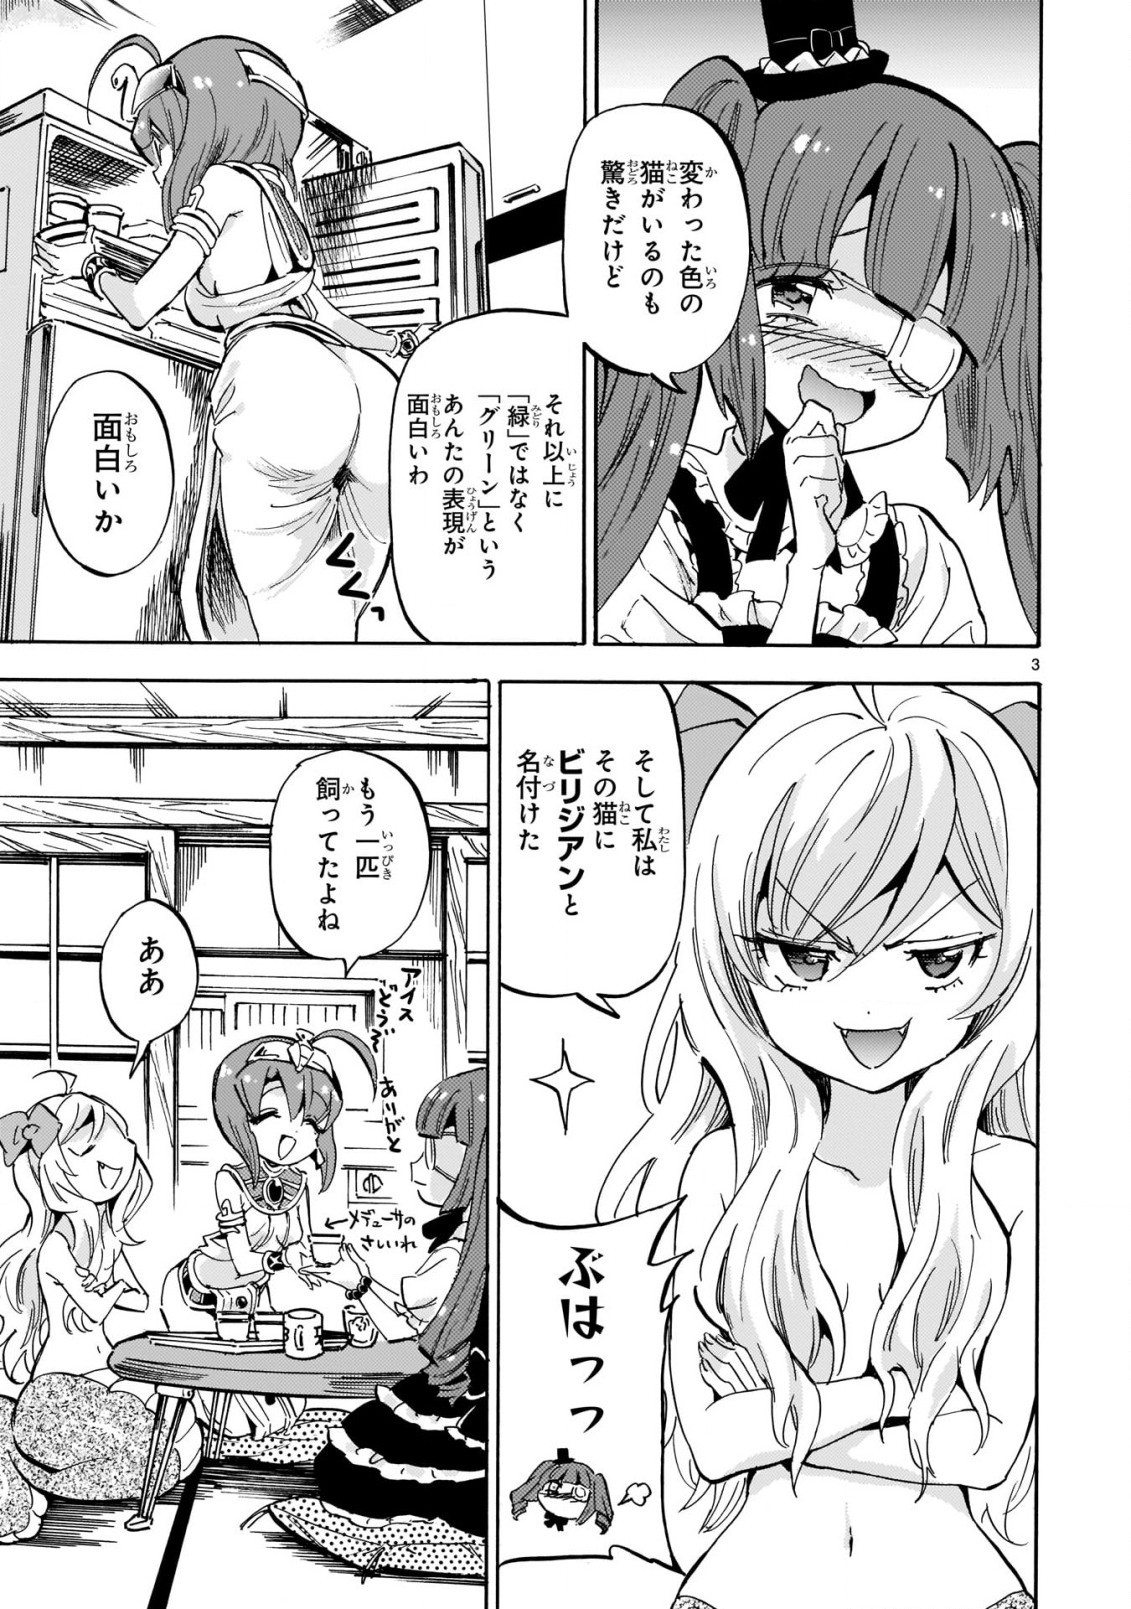 Jashin-chan Dropkick - Chapter 197 - Page 3